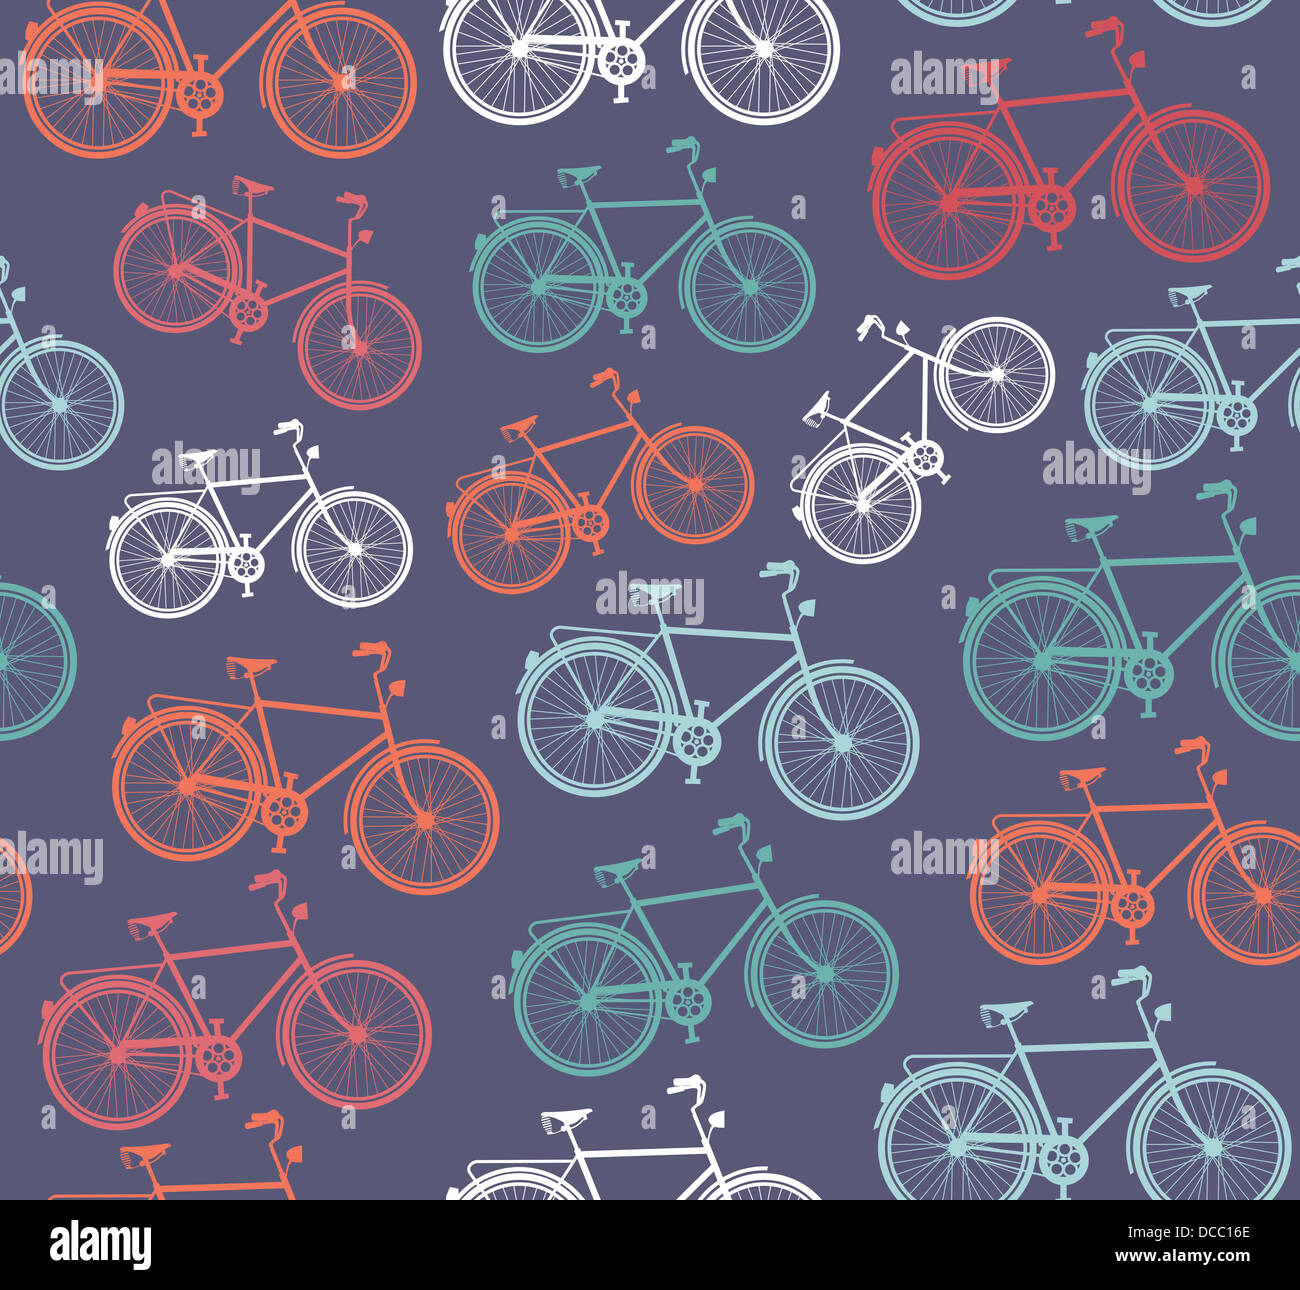 Vélo Vintage transparent, motif de fond. Fichier vecteur pour faciliter les modifications en couches Banque D'Images